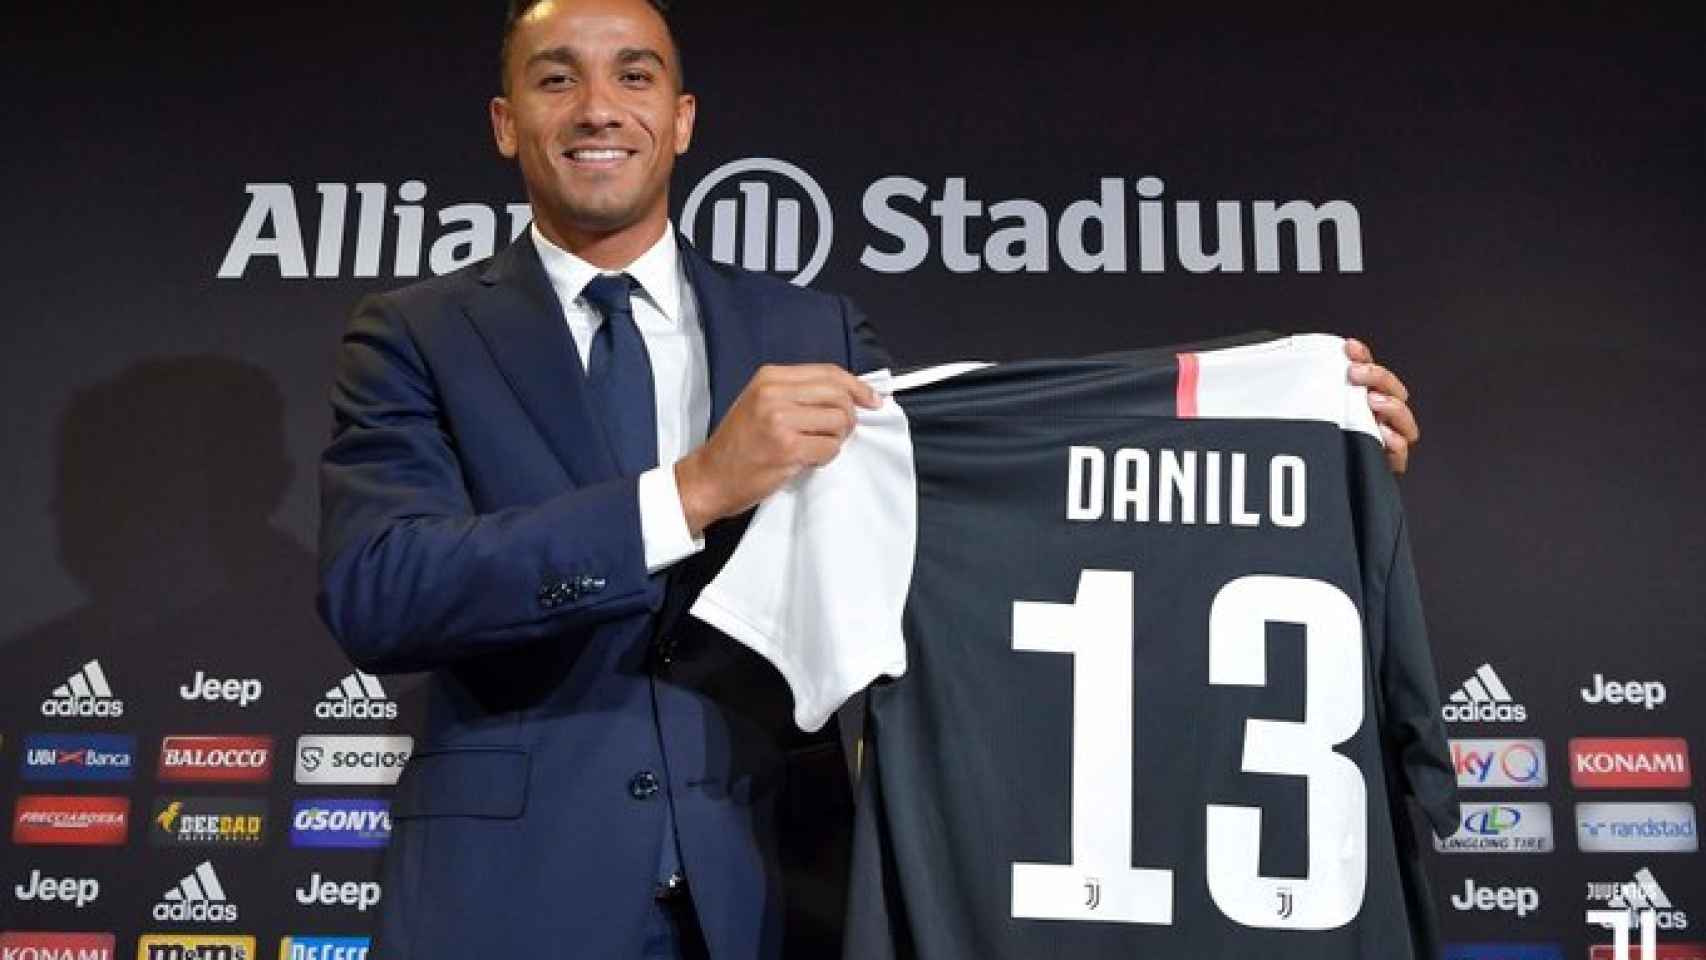 Danilo presentado como nuevo jugador de la Juventus. Foto: Twitter (@juventusfc)